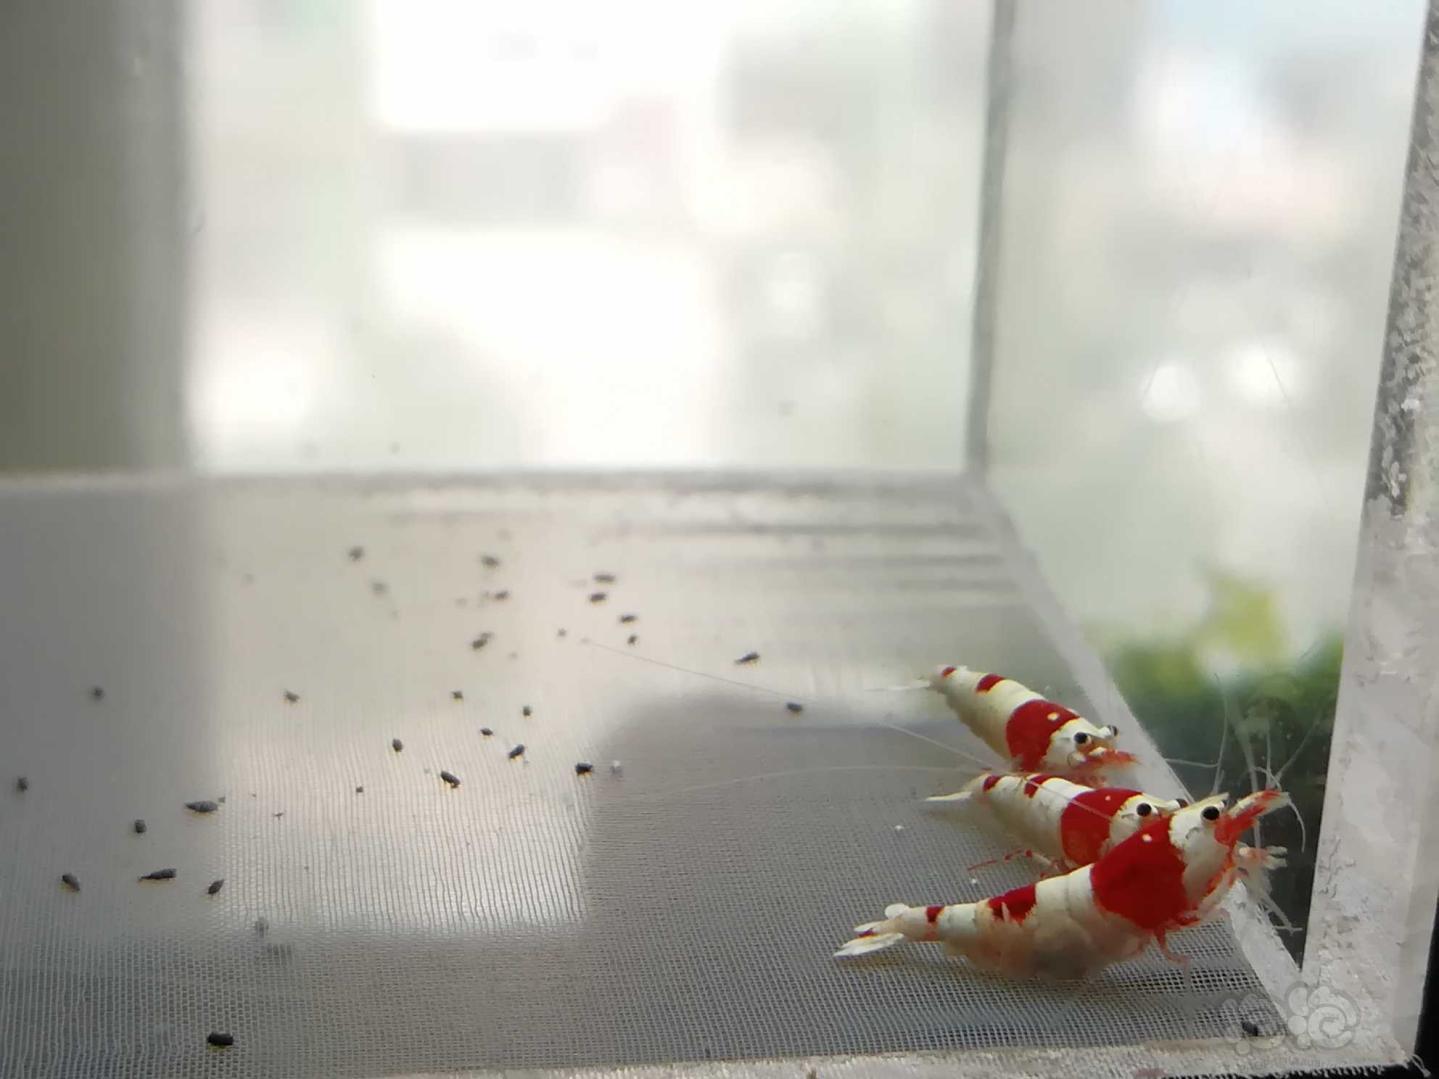 【虾】2020-07-01#RMB拍卖#红白纯血水晶虾一份5只-图3